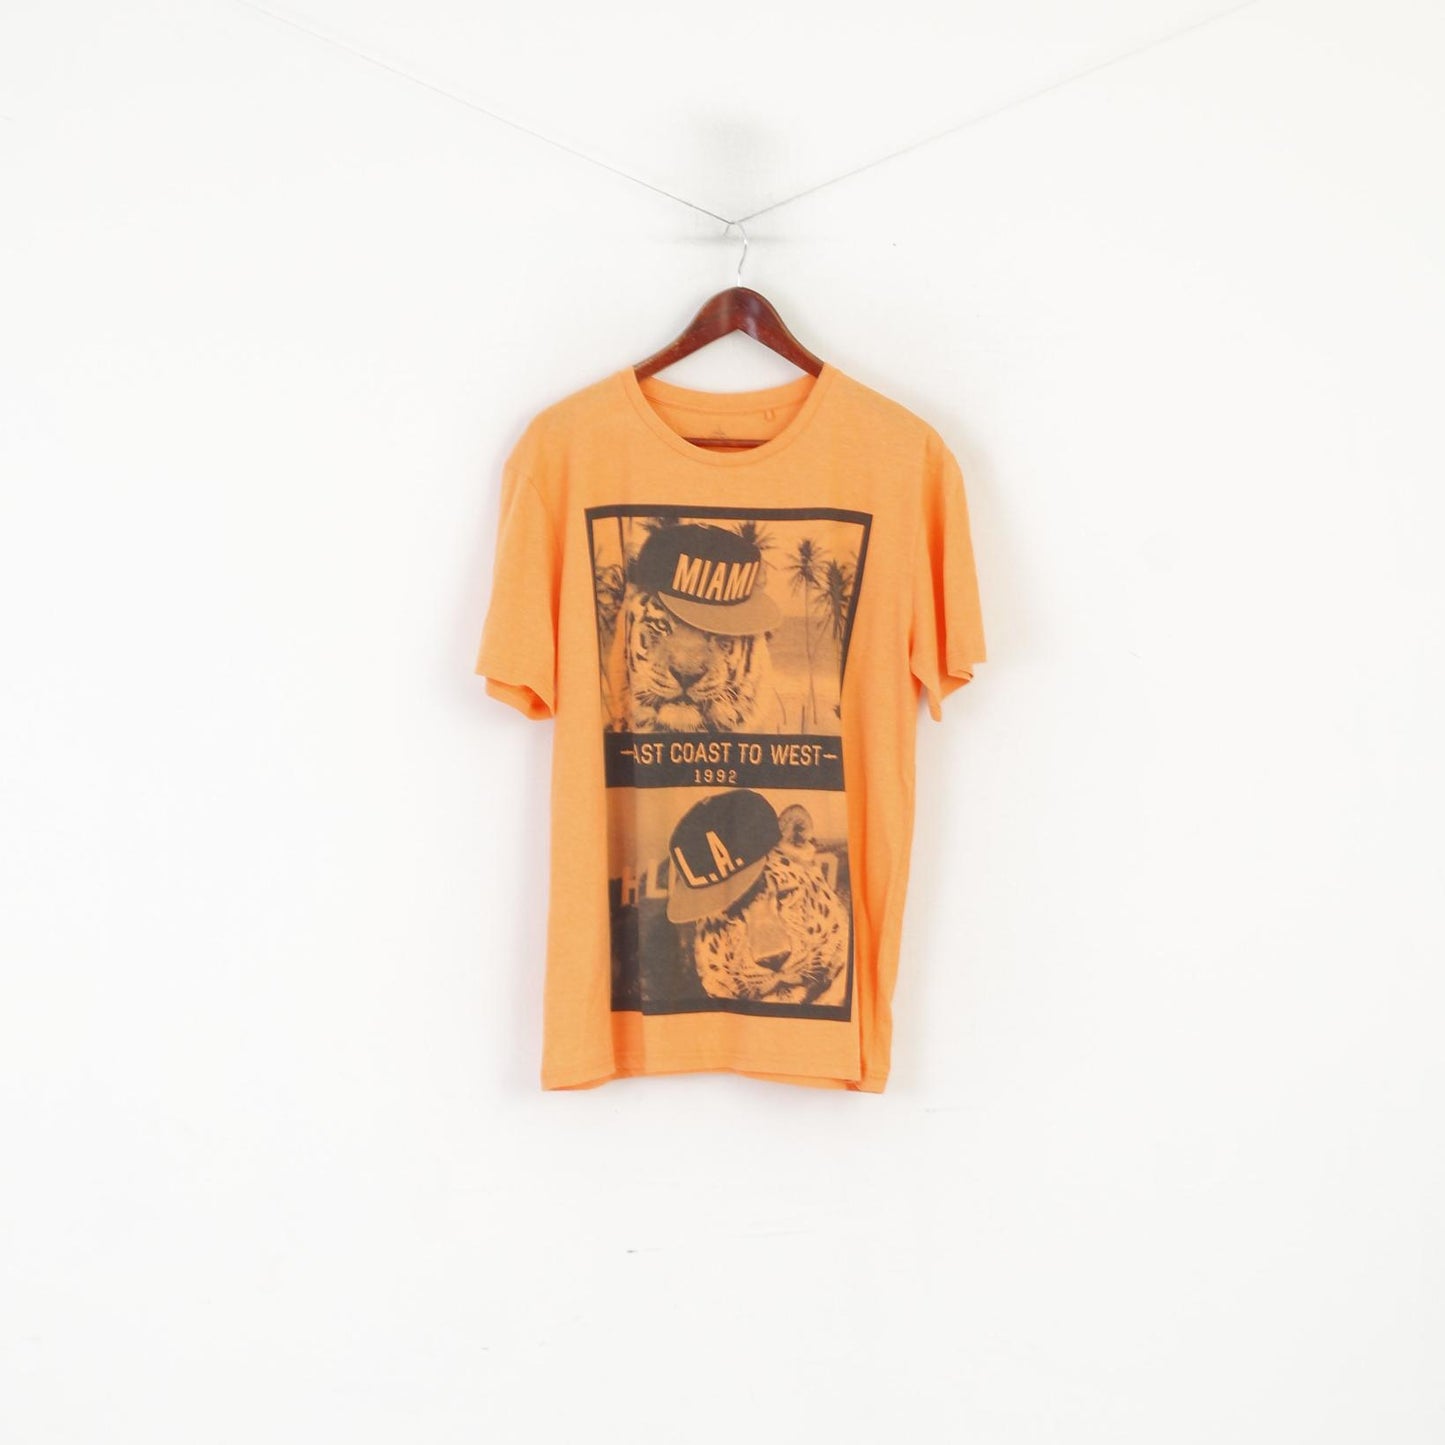 Industrialize Men L Shirt Orange Cotton Graphic Miami LA Summer Top